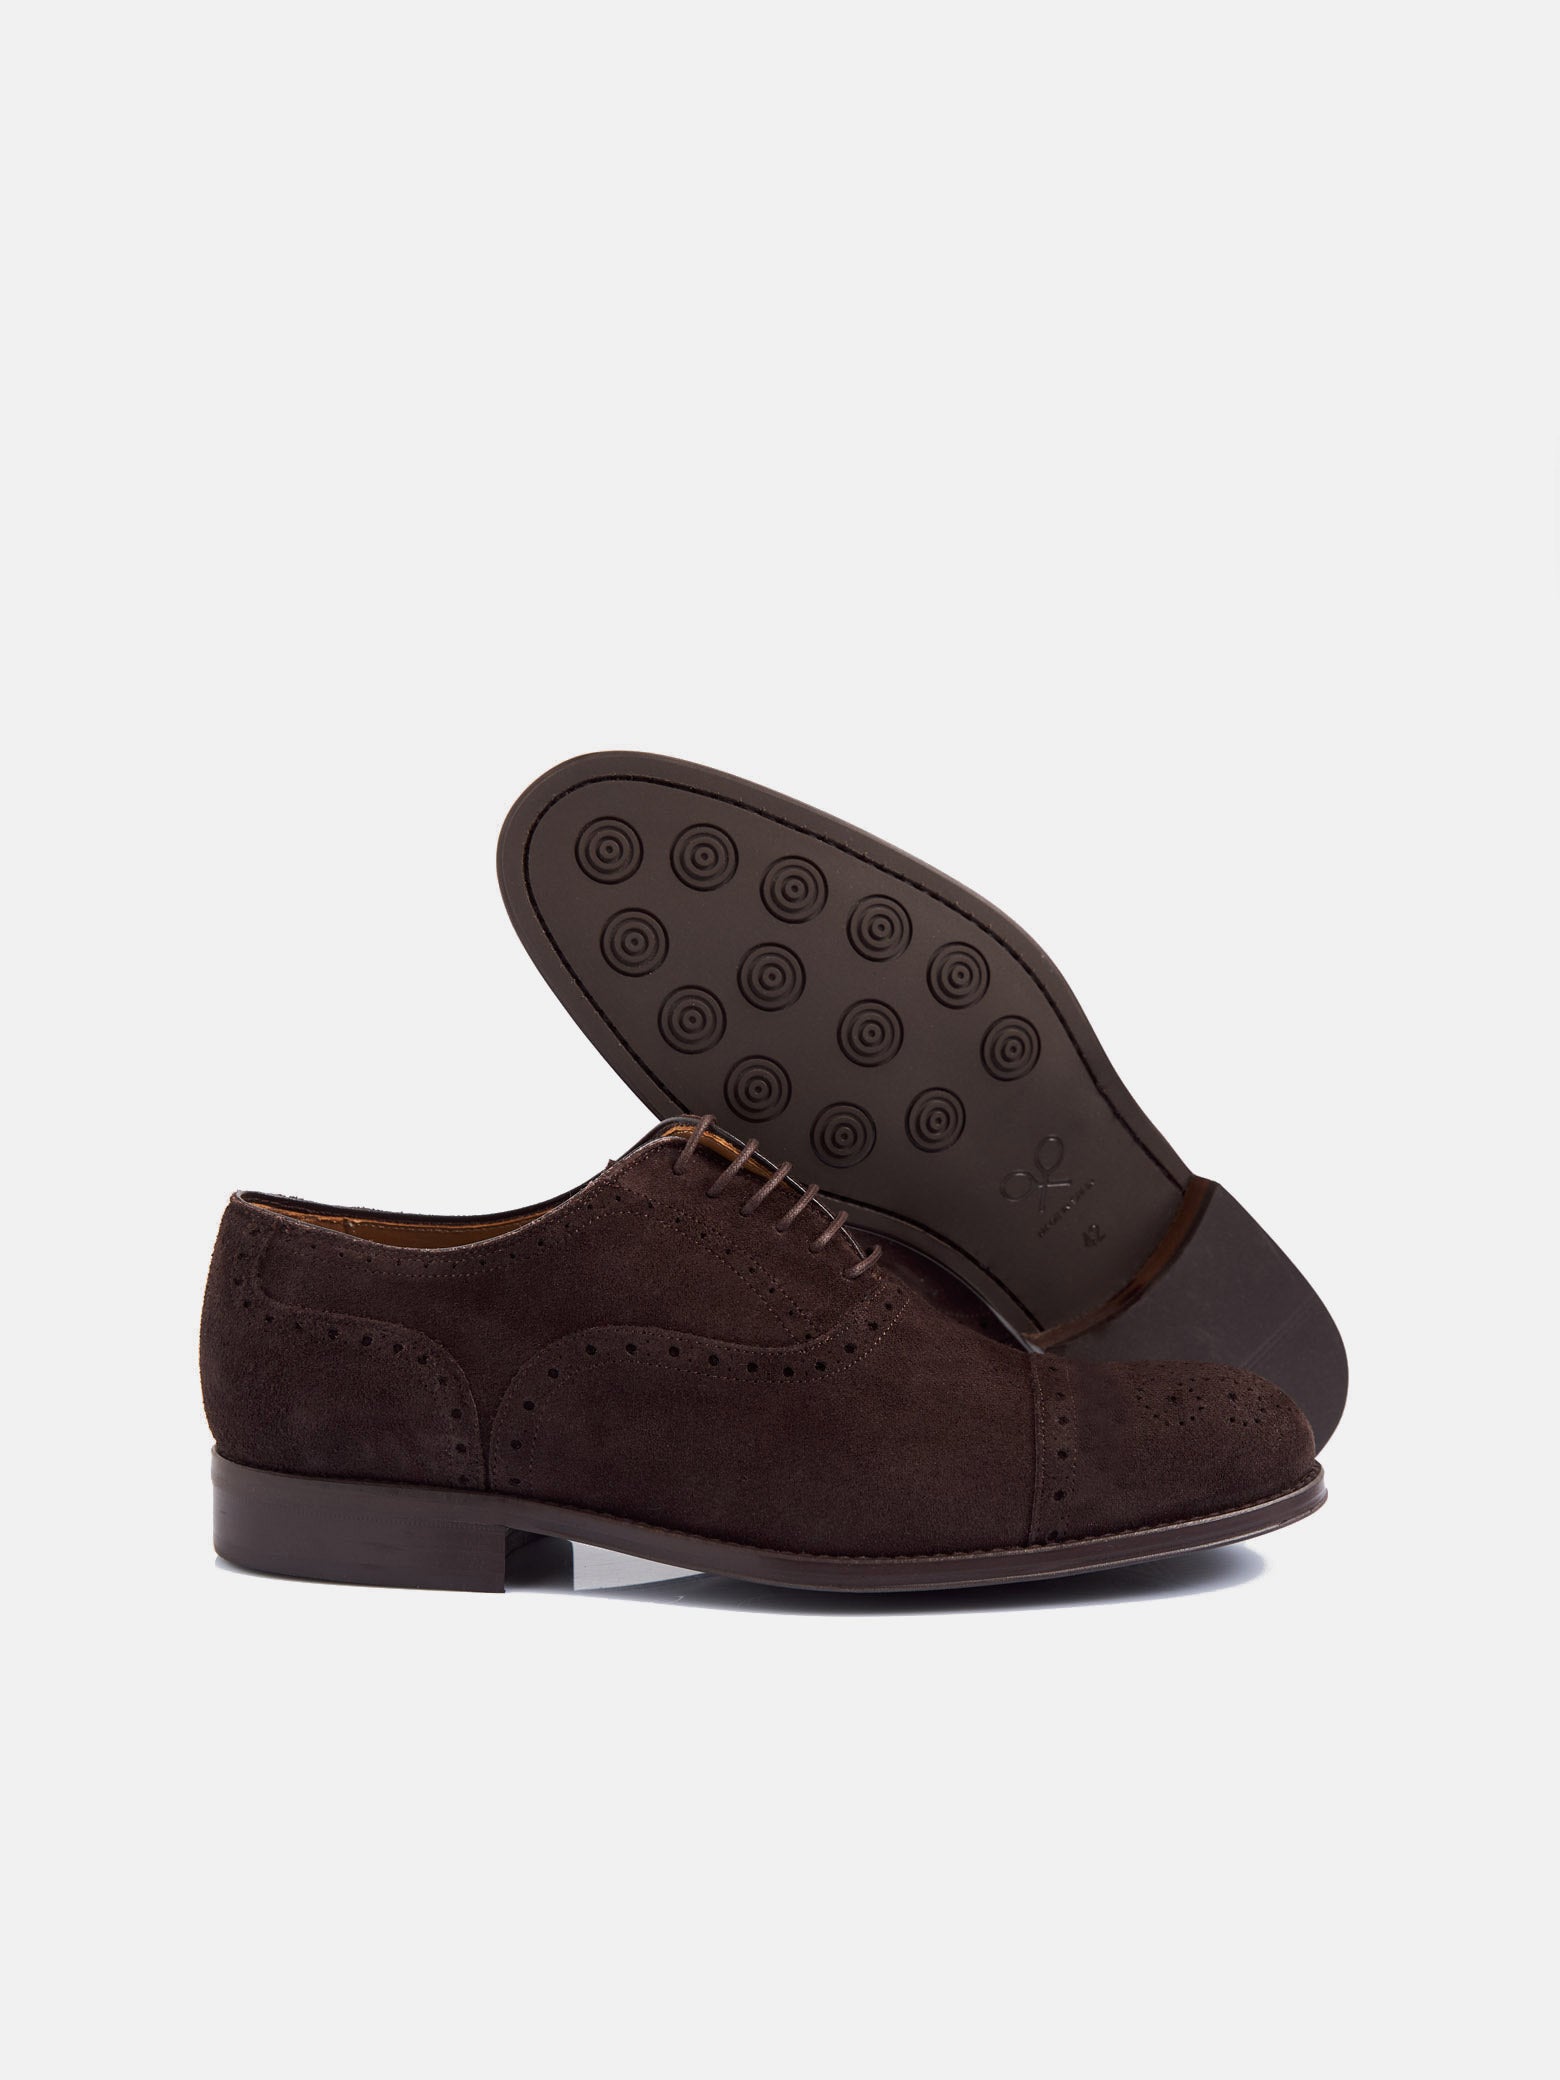 Zapato clasico ante perforado marron